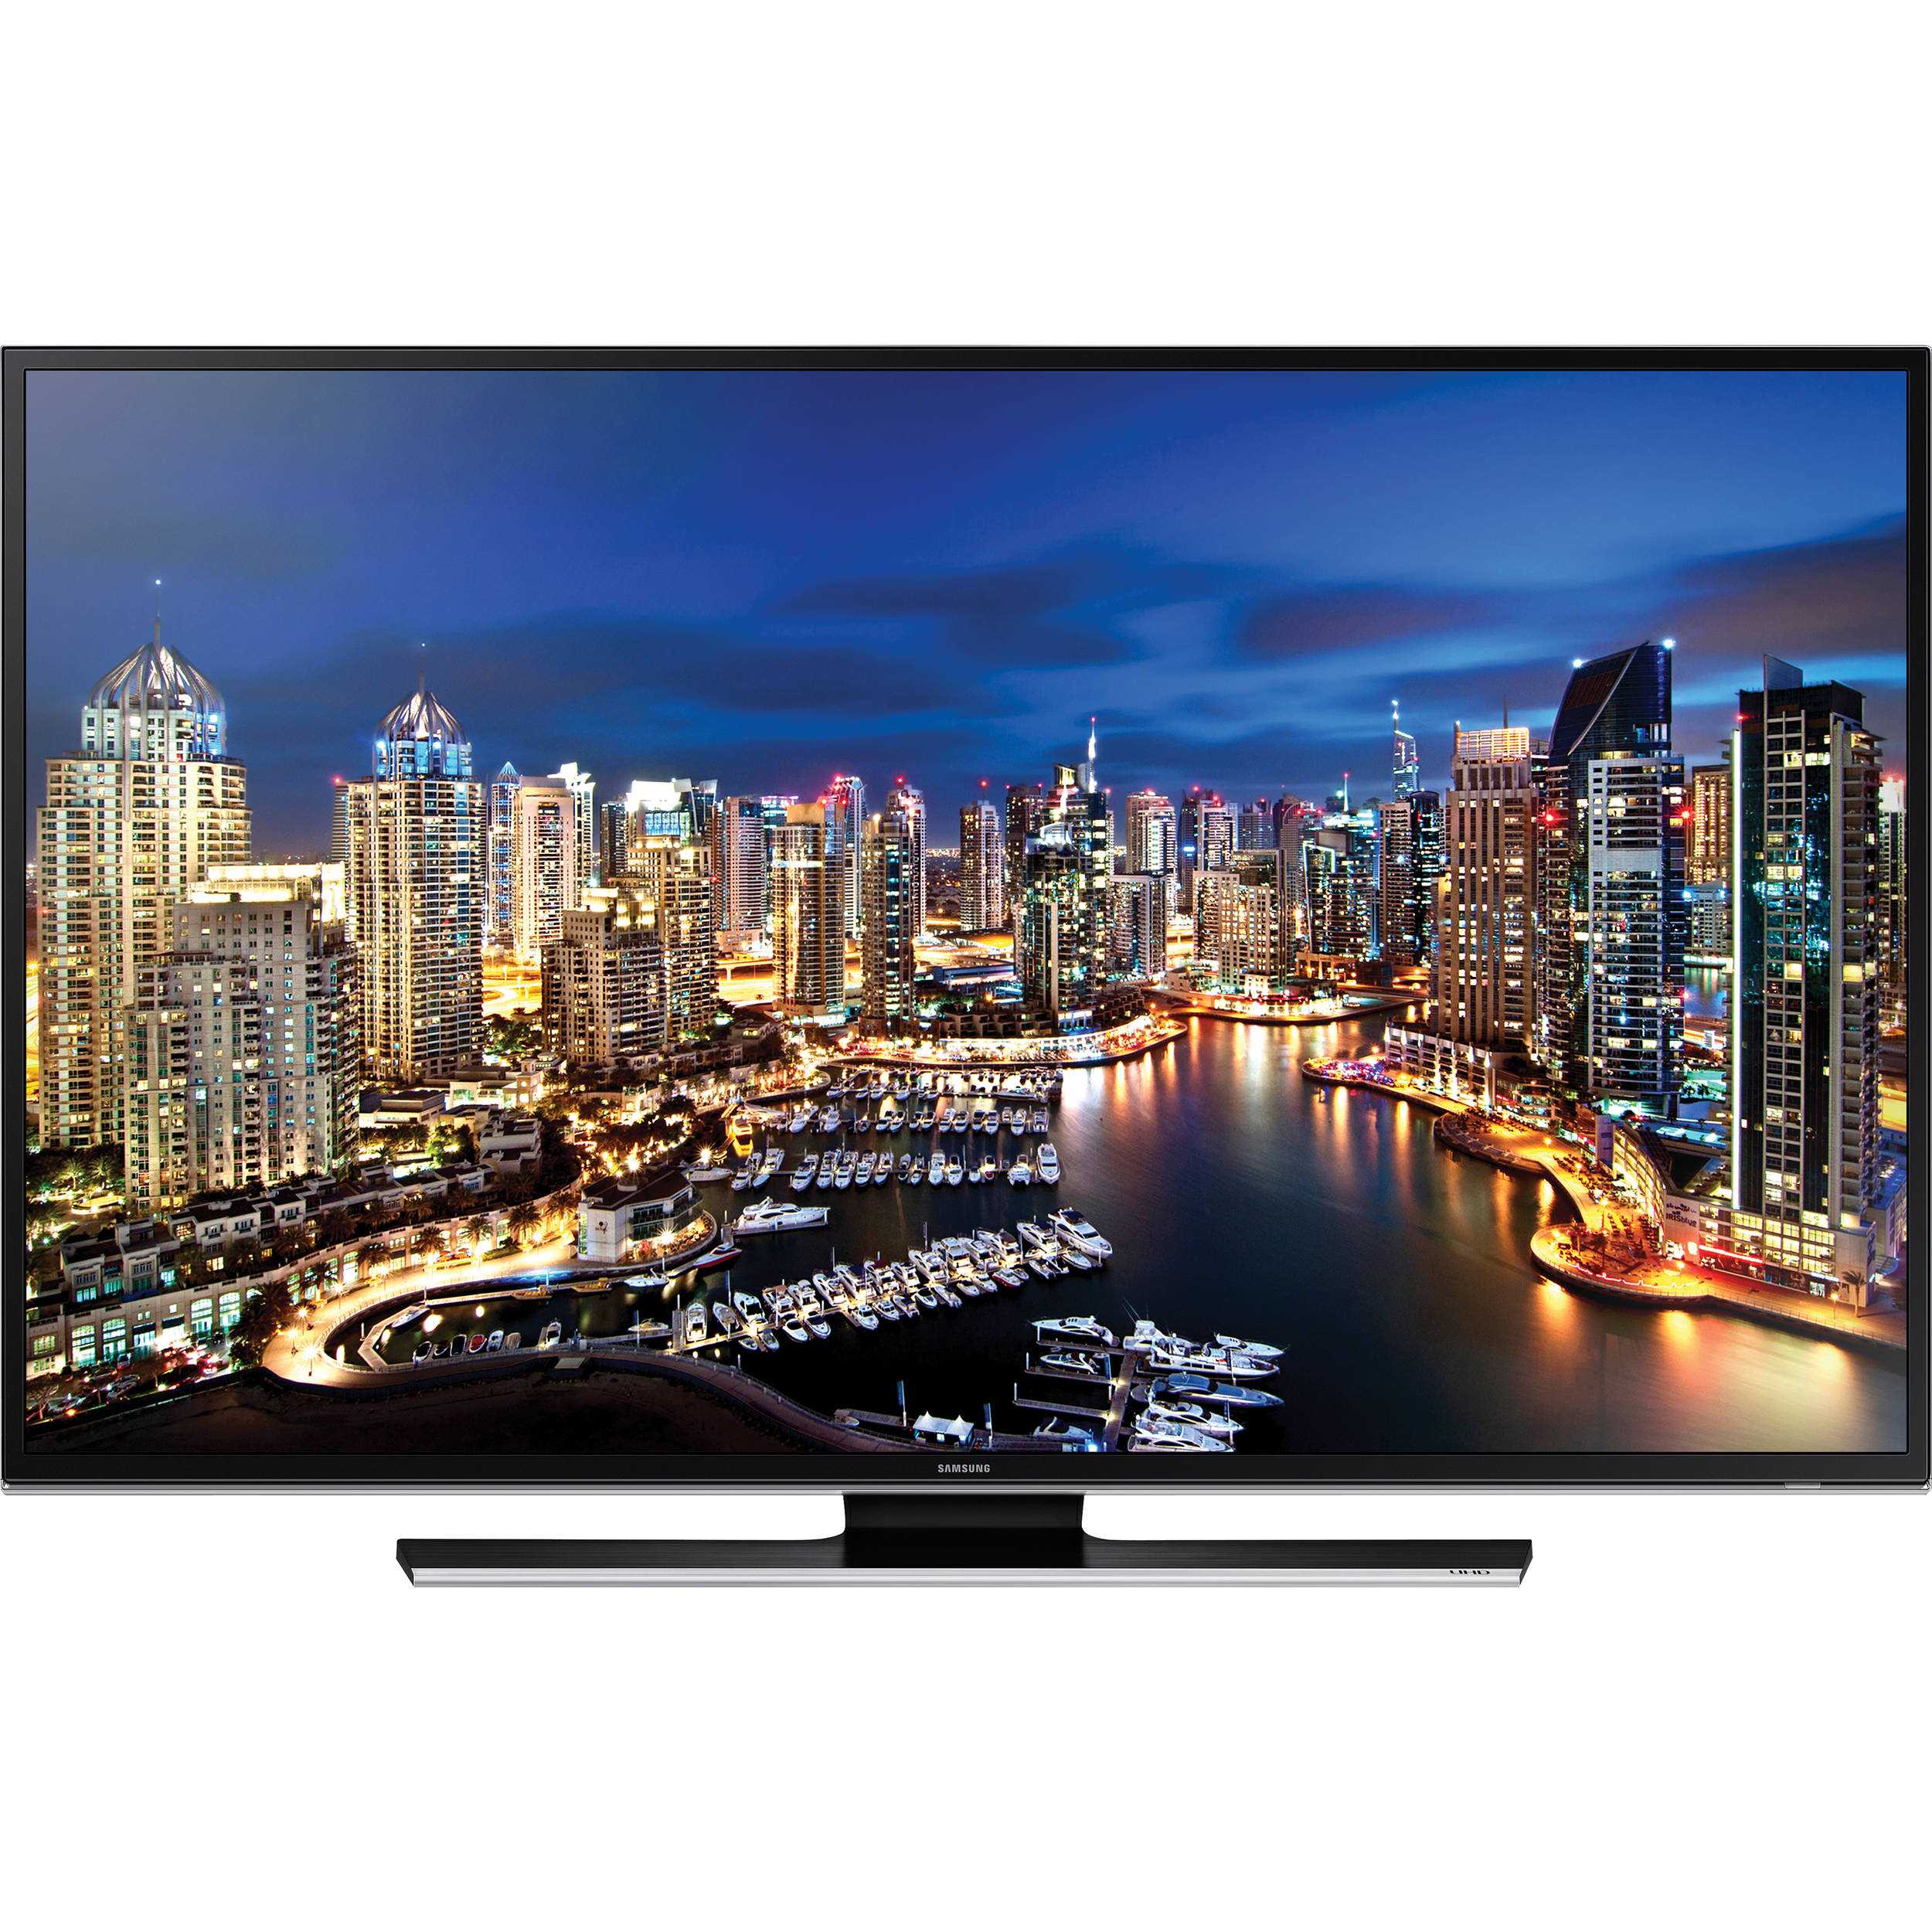 Телевизор Samsung UE50HU7000 - подробные характеристики обзоры видео фото Цены в интернет-магазинах где можно купить телевизор Samsung UE50HU7000